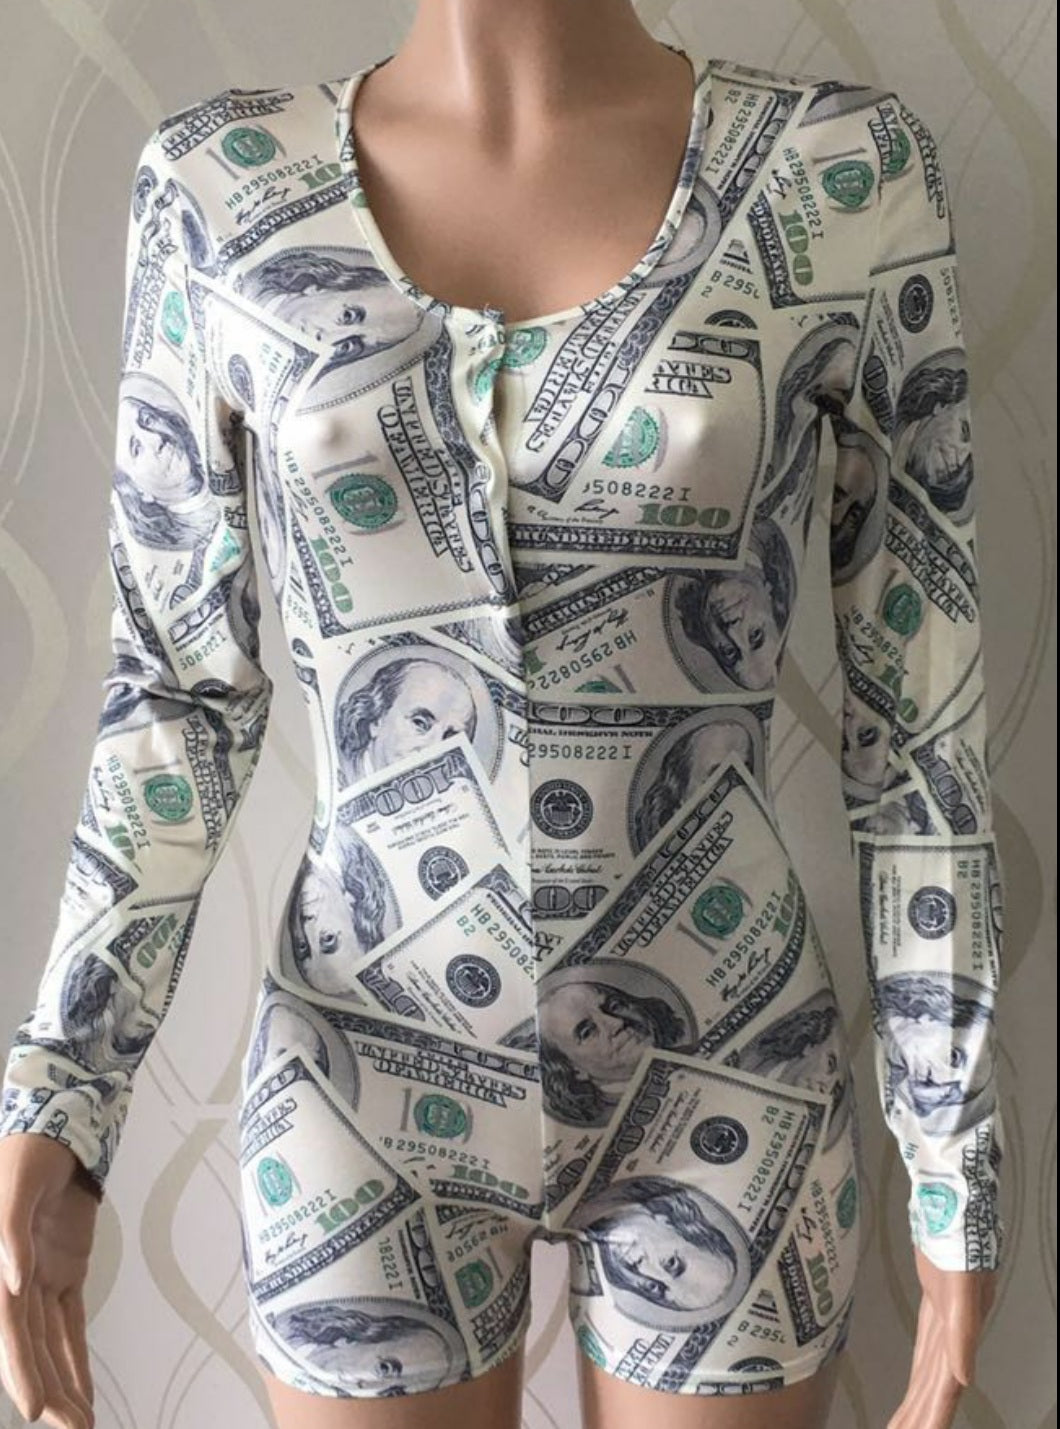 Benjamins Money Green Long Sleeve Onesie Romper Jammies Sexy Loungewear Nightie Nightwear PJ Party Pajama